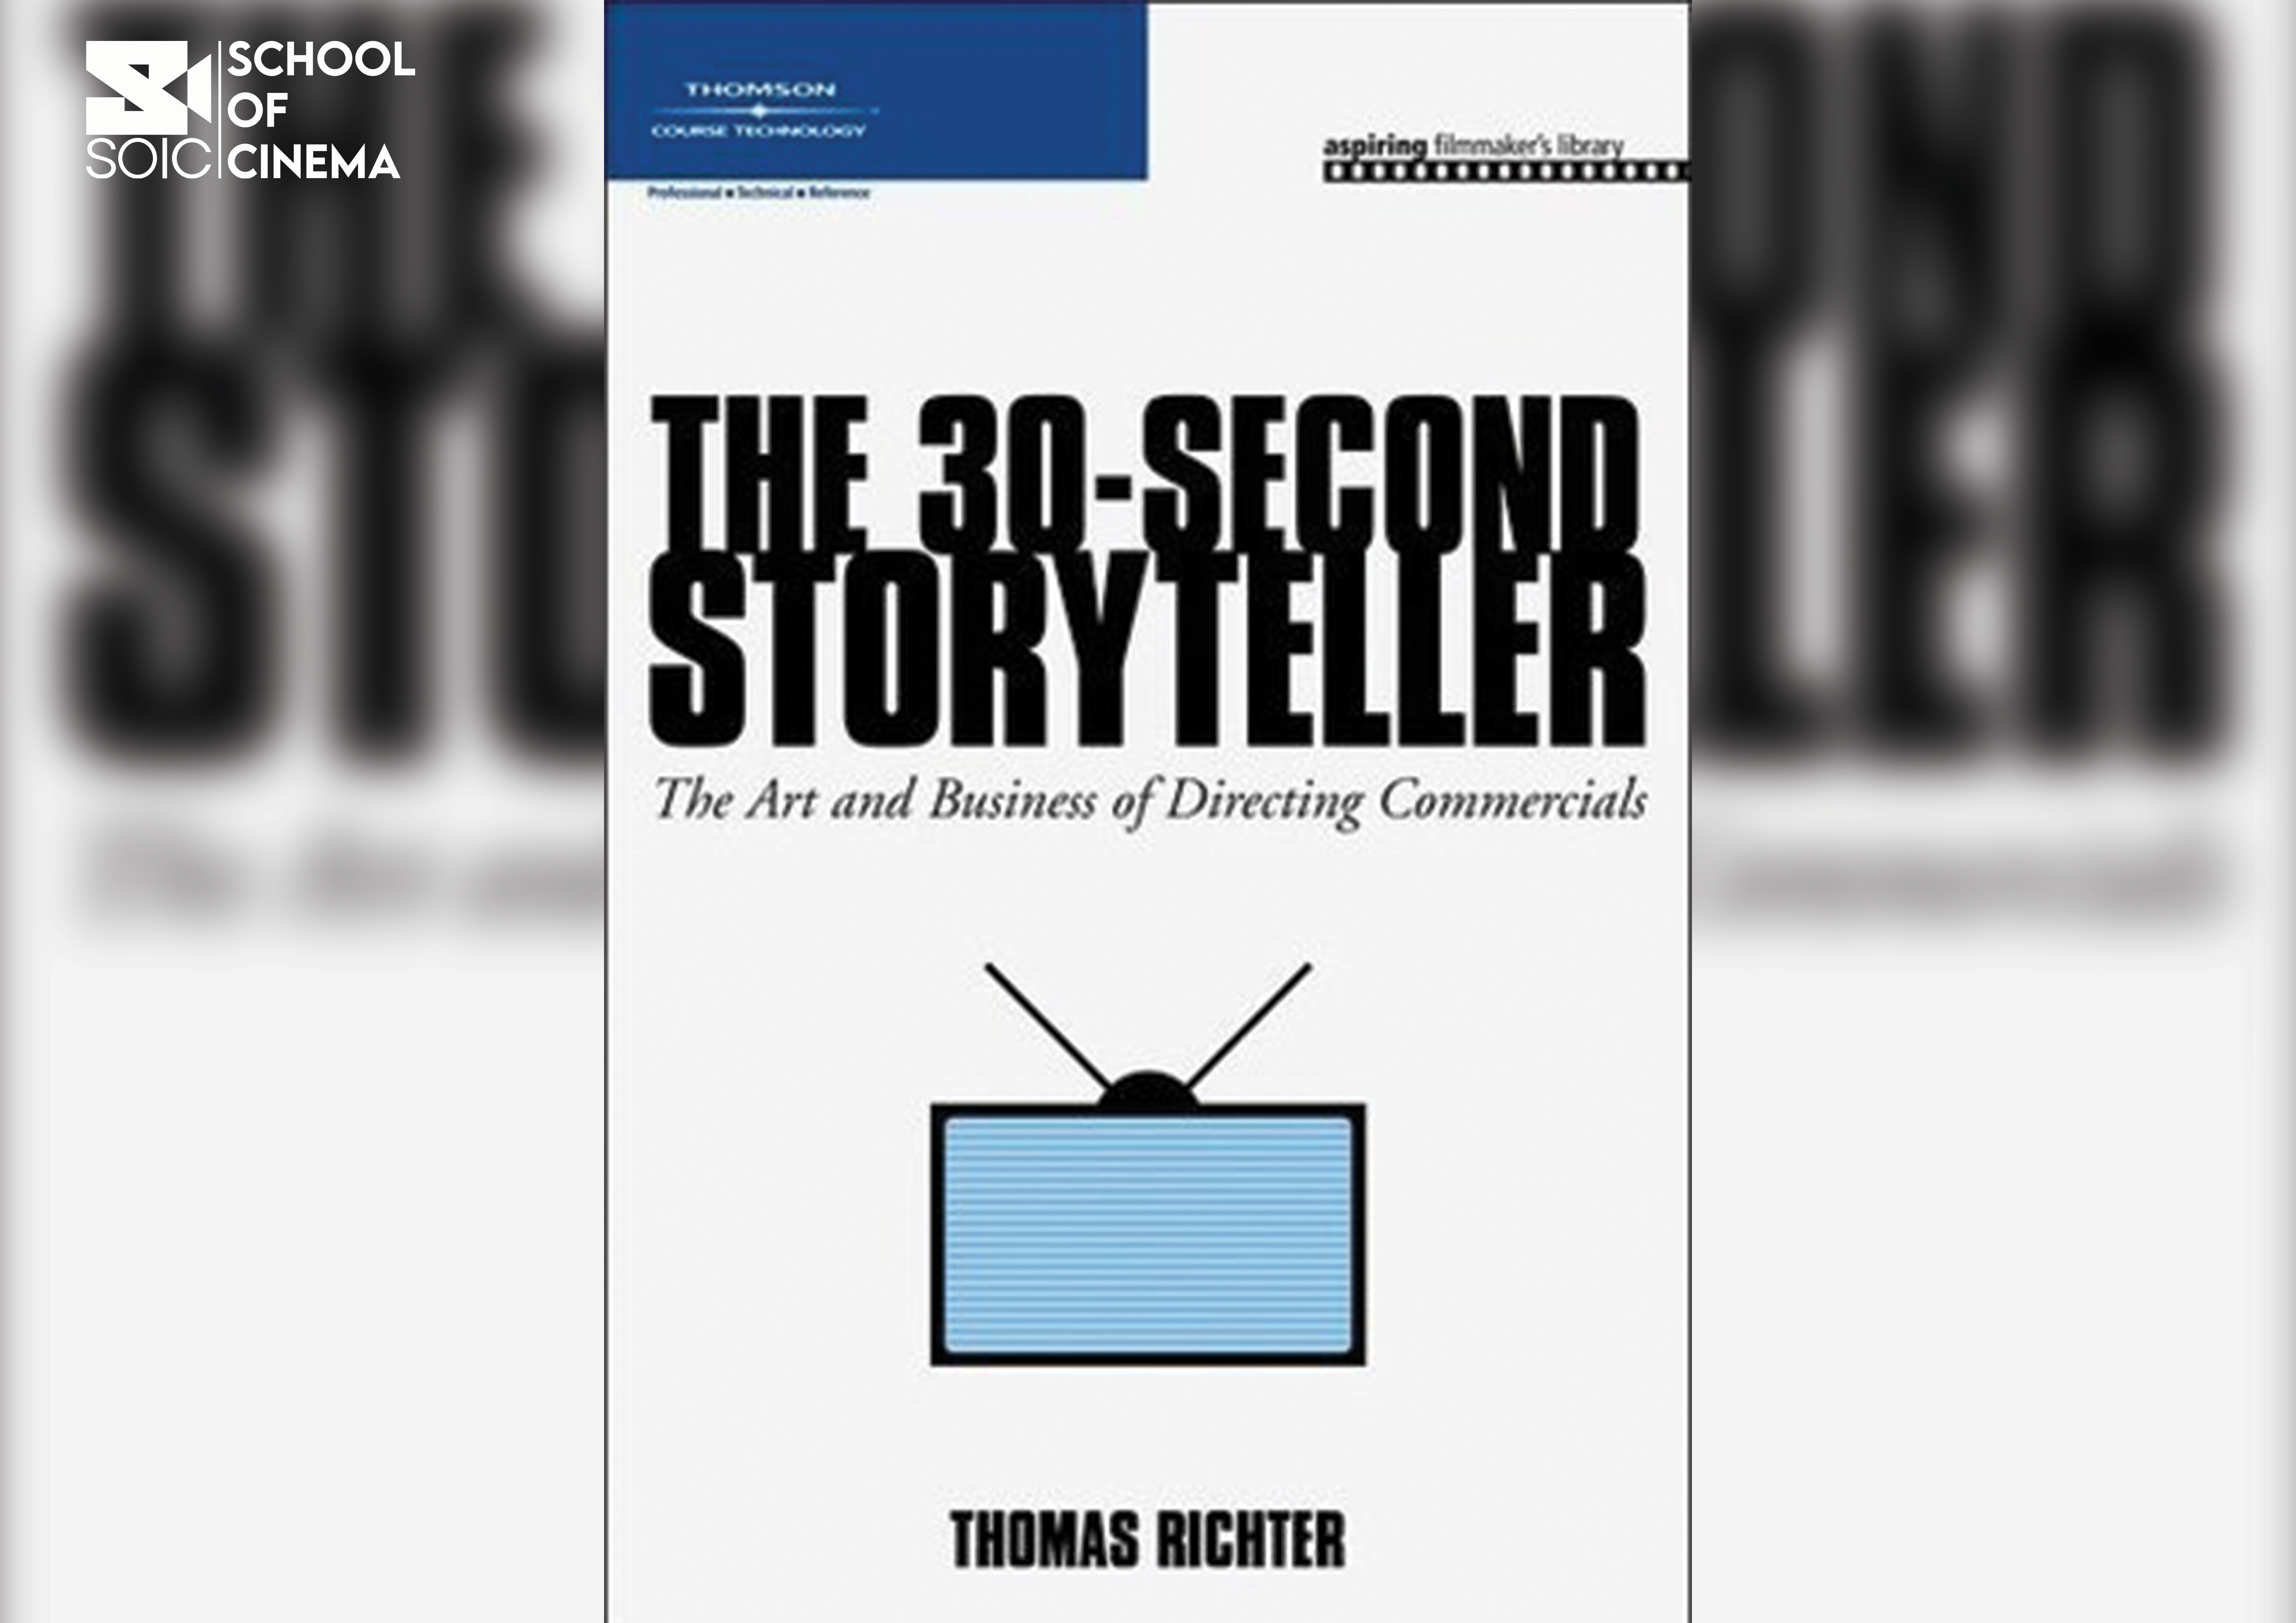 The 30 second storyteller